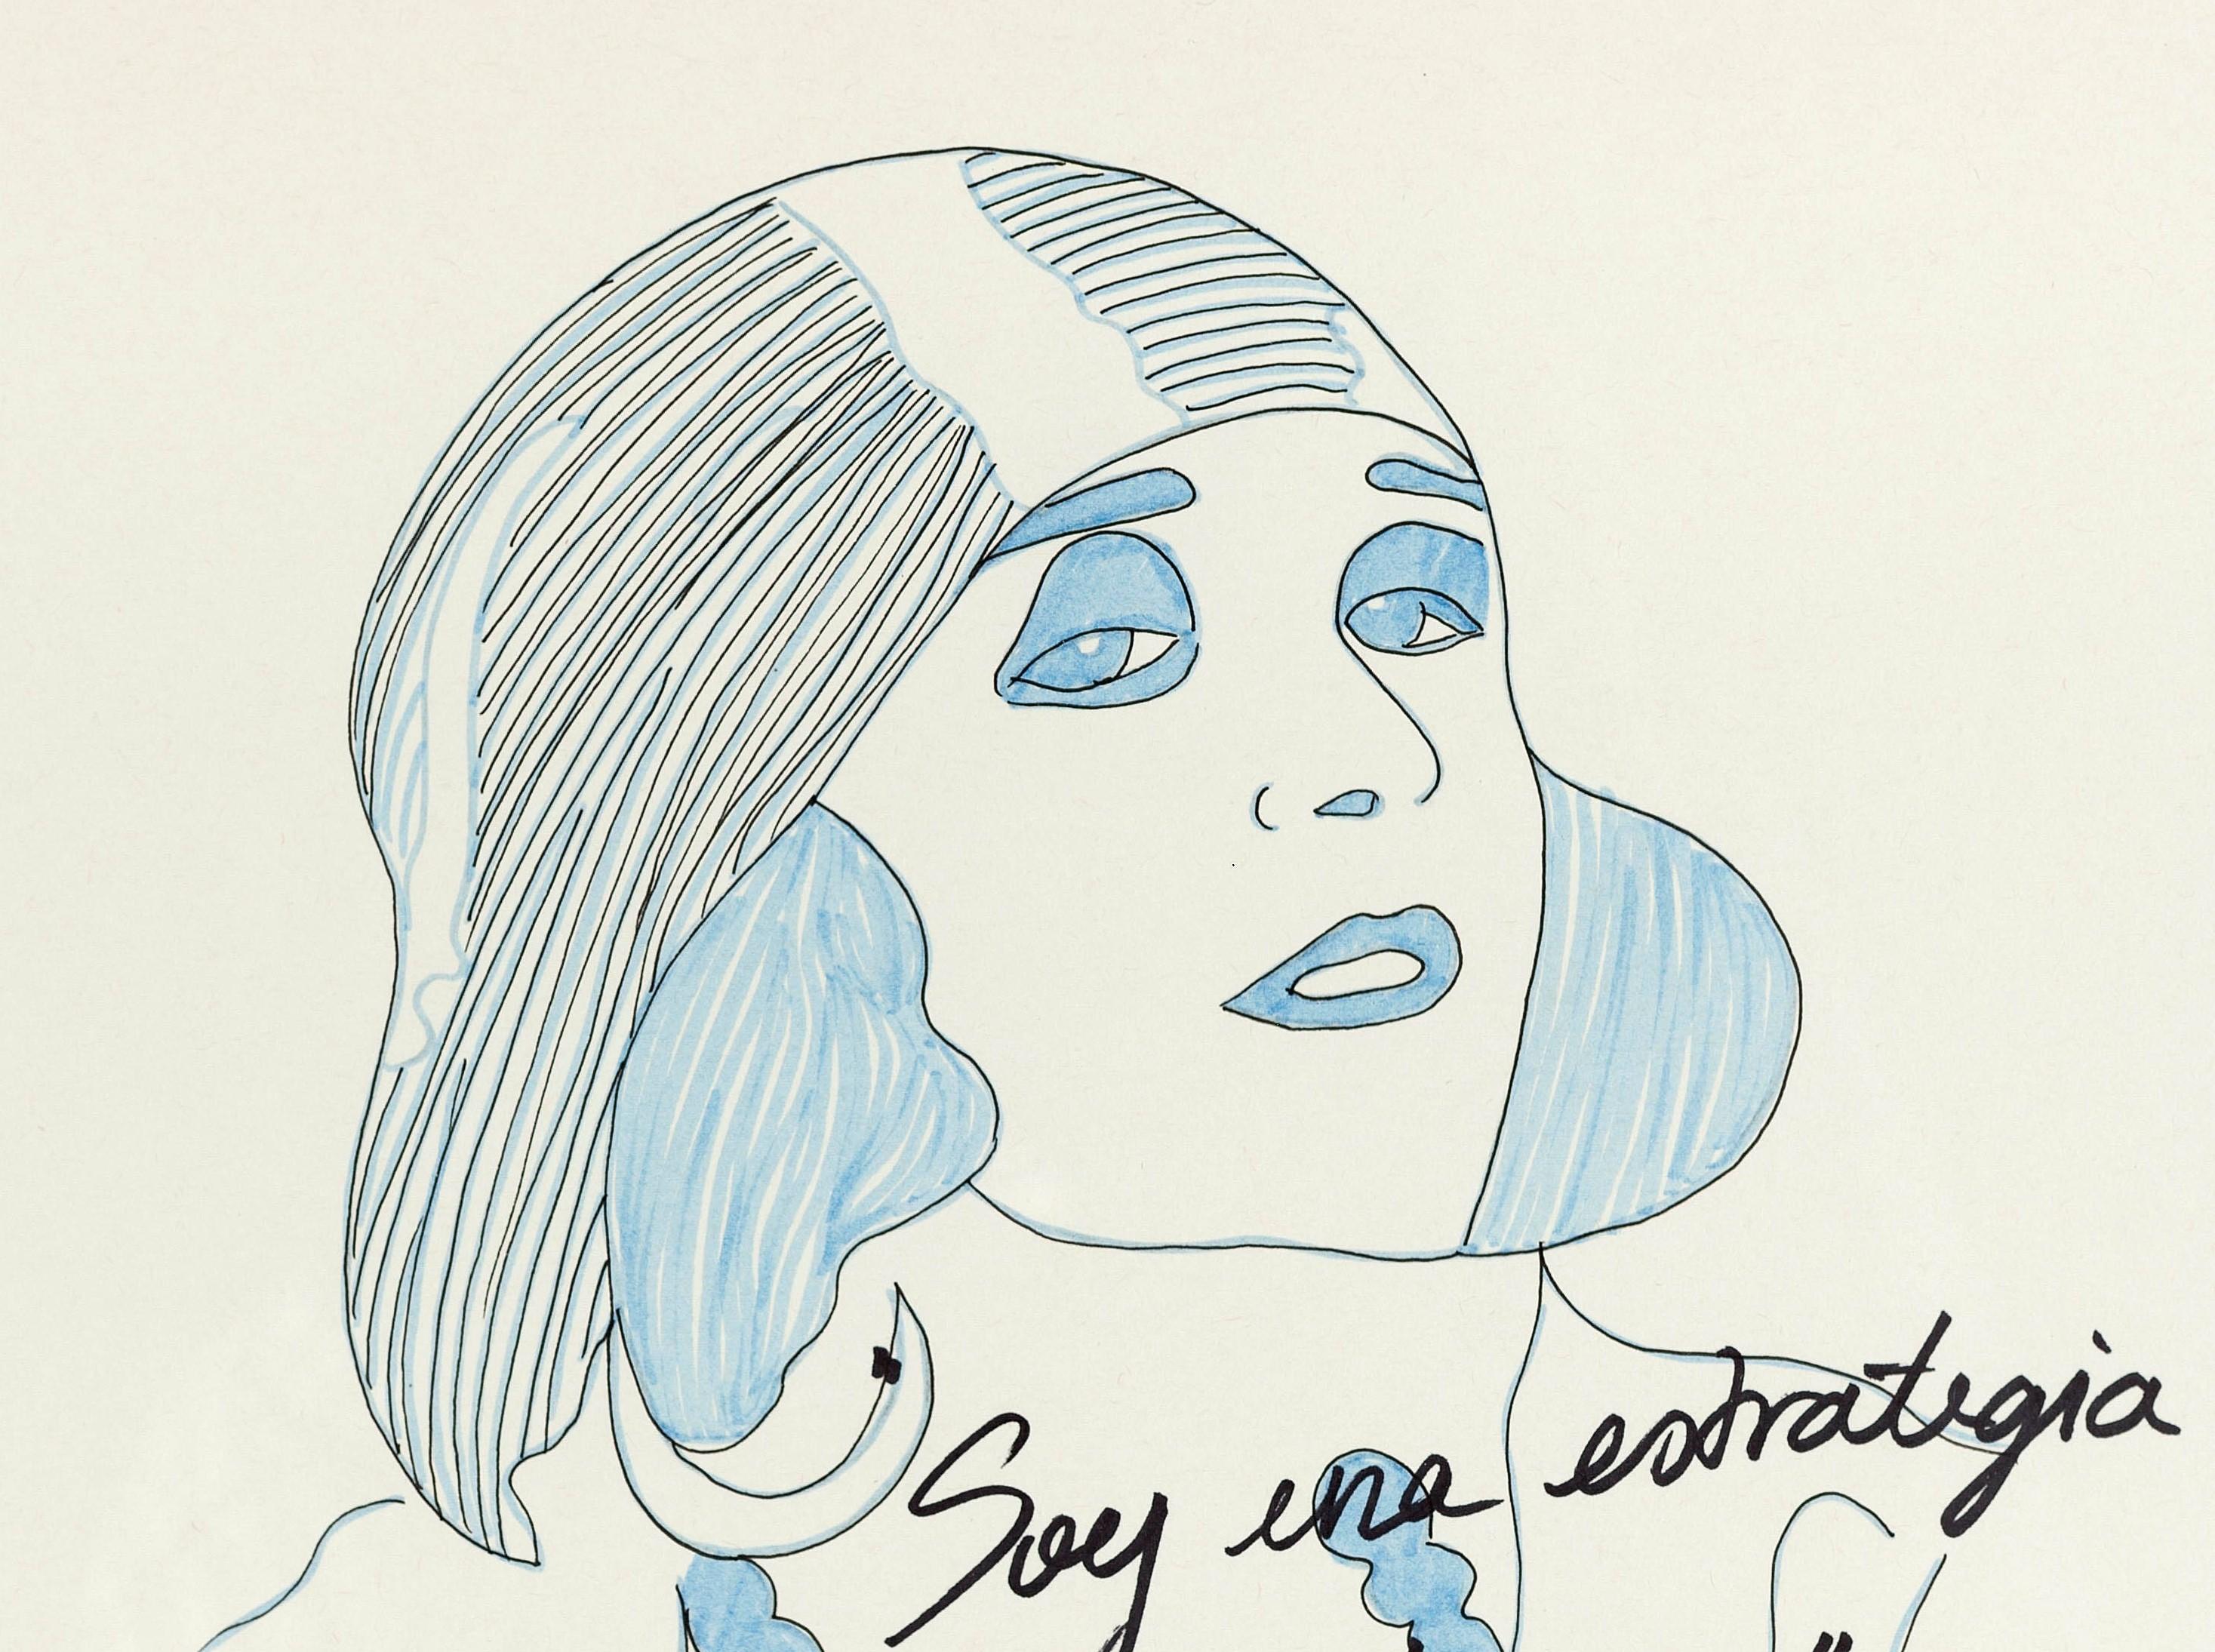 Pola Negri I. Zeichnung aus der Serie The Dis-enchanted. – Art von Paloma Castello